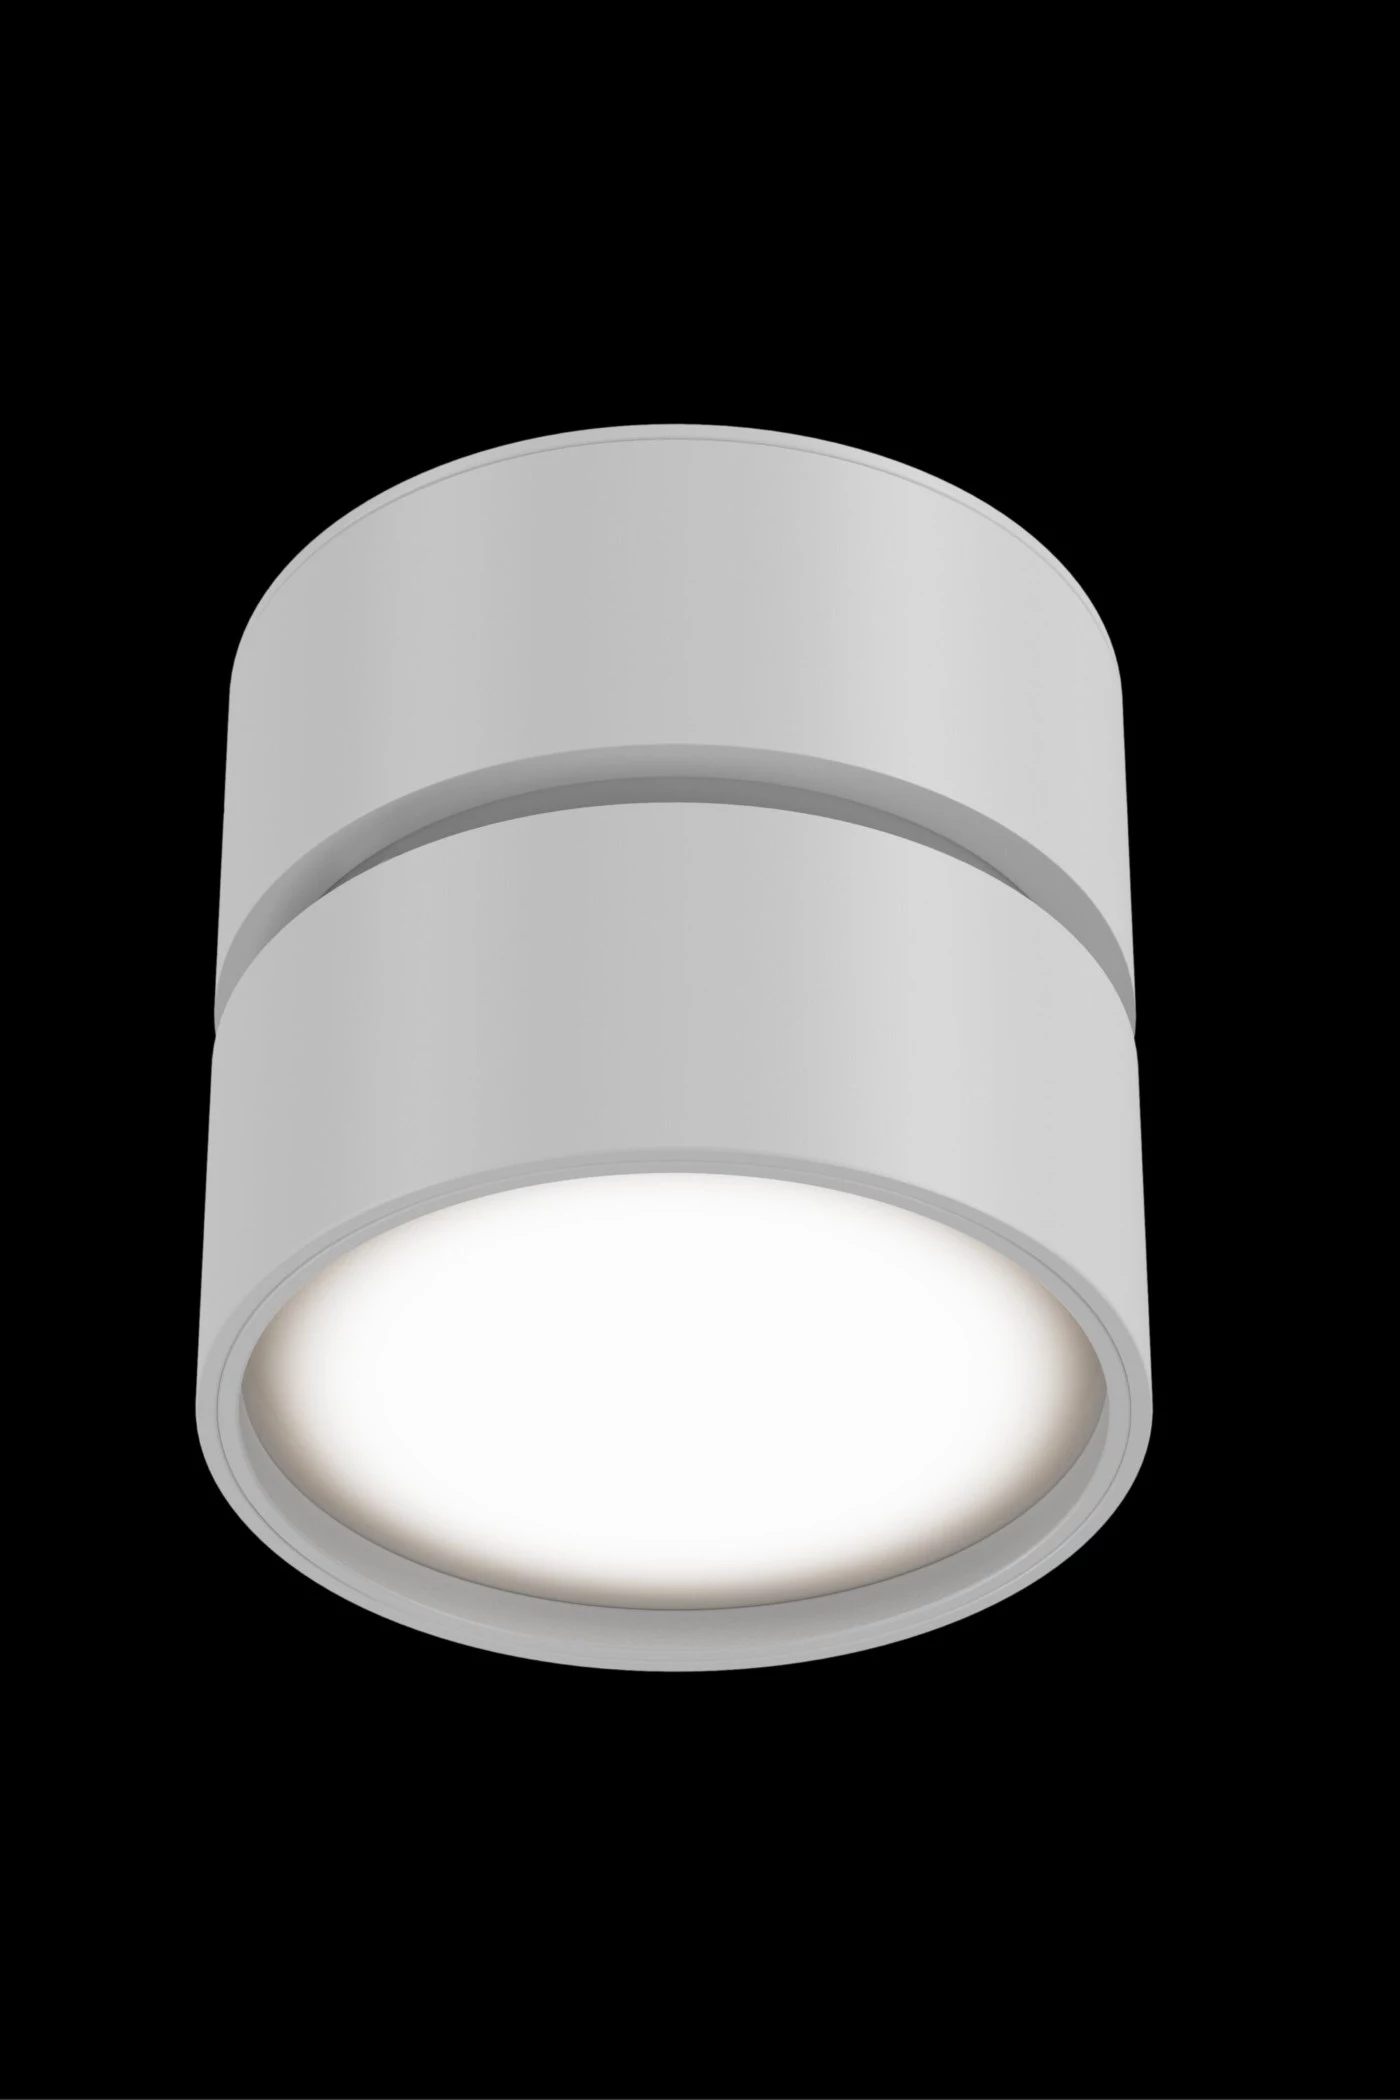   
                        Точечный светильник MAYTONI  (Германия) 31805    
                         в стиле Хай-тек.  
                        Тип источника света: встроенный led-модуль, несъемный.                         Форма: Круг.                                                                          фото 3